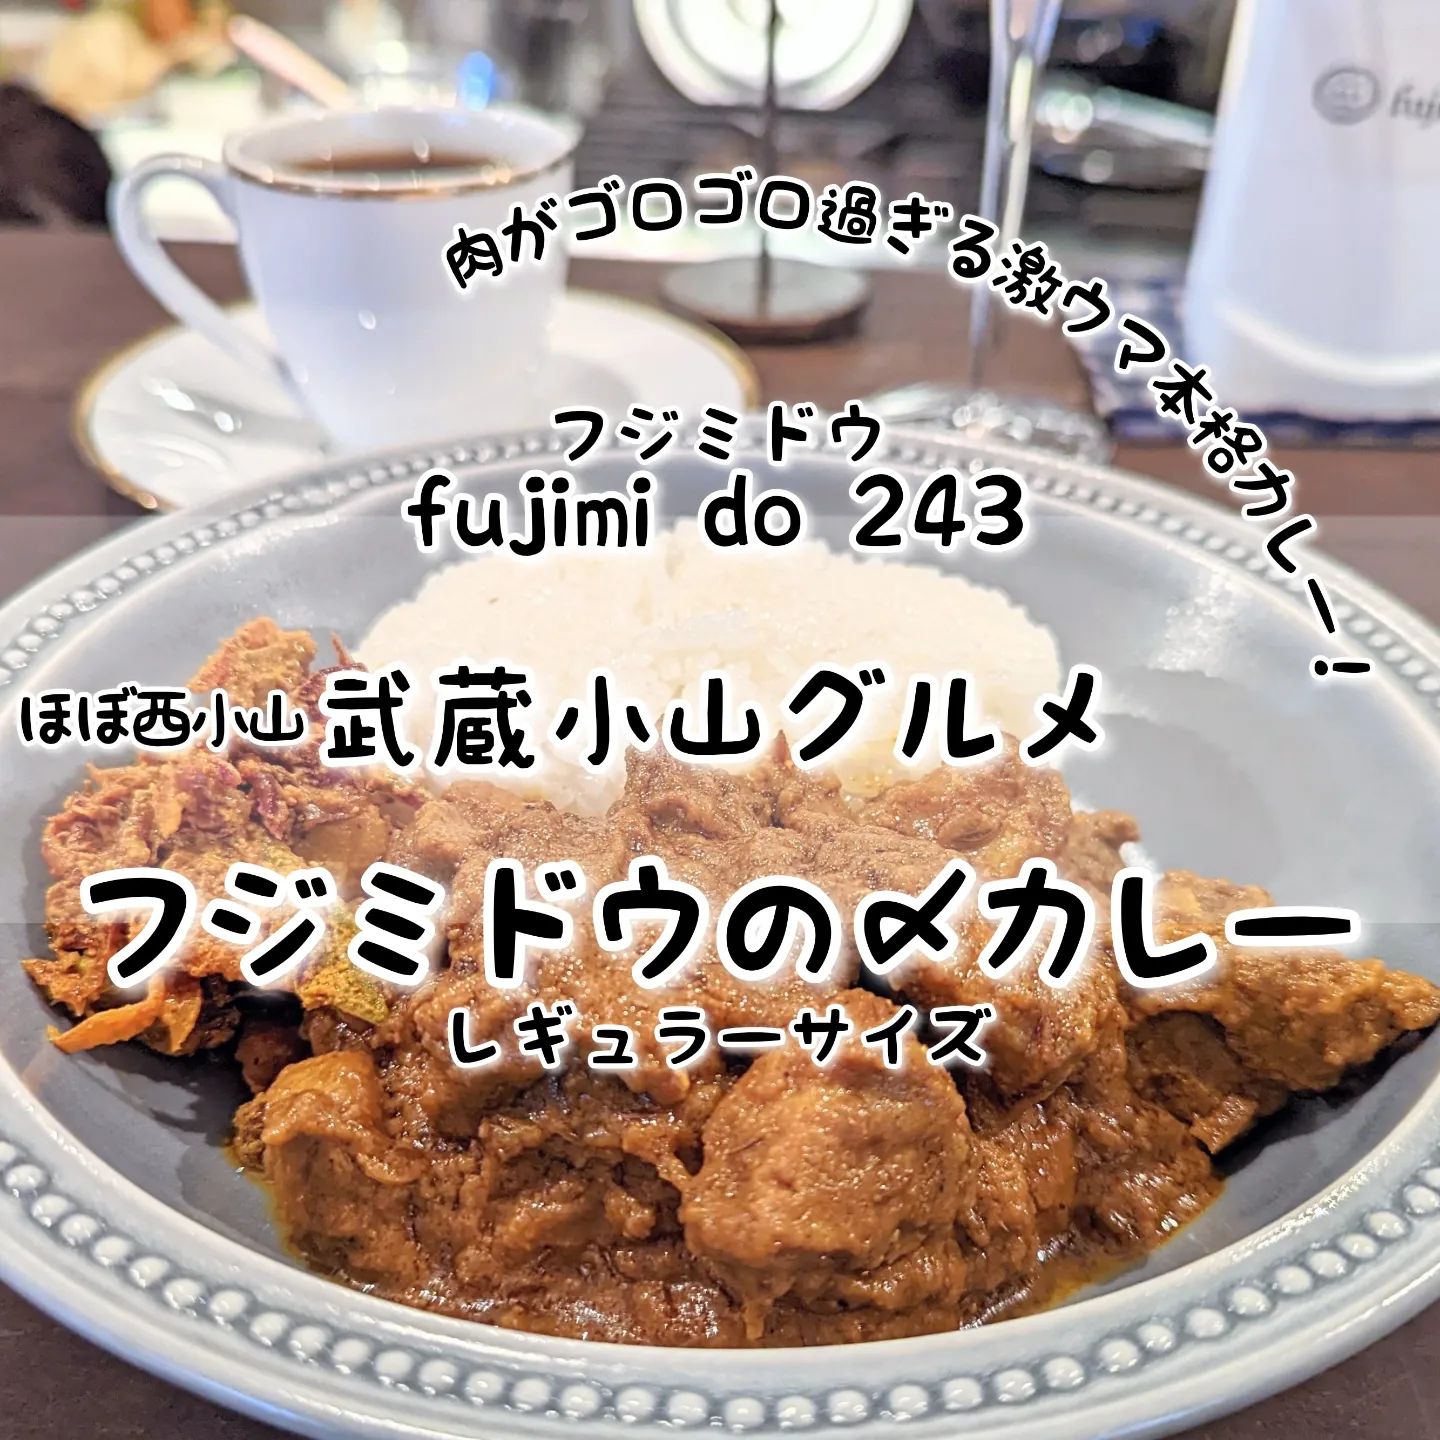 #武蔵小山新店情報 #fujimido243 #フジミドウの〆カレー おもいで度－－－☆－ #侍猫度マイルド系－－－☆－スパイシー系あっさり系－－☆－－コッテリ系シンプル系－－－☆－ゴロゴロ系オールド系－－☆－－ニュー系お肉がゴロゴロ過ぎる本格カレーが美味しい！ルーのほとんどが肉で構成されているゴロゴロ系ルーで、この肉ルーを口の中に入れるとスパイスの香りが広がる本格カレーとなっております！この肉の旨味とスパイスの香りが食欲スイッチをオンにしてしまいますので、カレーのサイズはスモールよりレギュラーが良いかと思われますぞ！ちなみにこの肉ゴロゴロカレーは、金土日限定メニューとなっておりますのでご注意くださいな！こちらは、2018年10月オープンしたモツ系イタリアンのお店でございます。客席は、1階と2階に外にございまして、1階は、カウンター席になっていてカウンター内には、お話上手なお姉様がいますので、お一人様も初めての方も安心のお店でございます。お話を聞いていると、どうやらお姉様は、今は無き武蔵小山りゅえるのユーザーで、好きなパルム商店街のお店はサンリオショップというかなりのハイレベルの武蔵小山通でございました。ちなみにお店のロゴマークは、雲から顔をだしてる鏡富士で、数字の上下にある雲はモツをイメージしたモツ雲とのことでございますぞ！フジミドウ243@fujimido243場所は、西小山駅からフルーツ一実屋さんのにこま通りを碑文谷方面へ進んでかむろ坂通り50m手前位にございます。波止場の近くでございますね。【侍猫を応援】メインサイトも応援クリックお願いします！次の武蔵小山グルメ探しの励みになります！※メインサイトへの移動はプロフィールのURLが簡単！（地図あり）→ @musashikoyama.news →https://musashikoyama.samuraicat.jp/ 【グルメ情報＆仕事の依頼】お気軽にメッセージください！ #武蔵小山 #武蔵小山グルメ #武蔵小山カフェ #西小山 #戸越銀座 #不動前 #碑文谷 #戸越 #中延 #荏原中延 #目黒本町 #品川 #品川区 #品川グルメ #目黒 #目黒区 #目黒グルメ #東京 #東京グルメ #tokyofood #tokyo #japan #andwine #カレー #武蔵小山カレー #フジミドウ